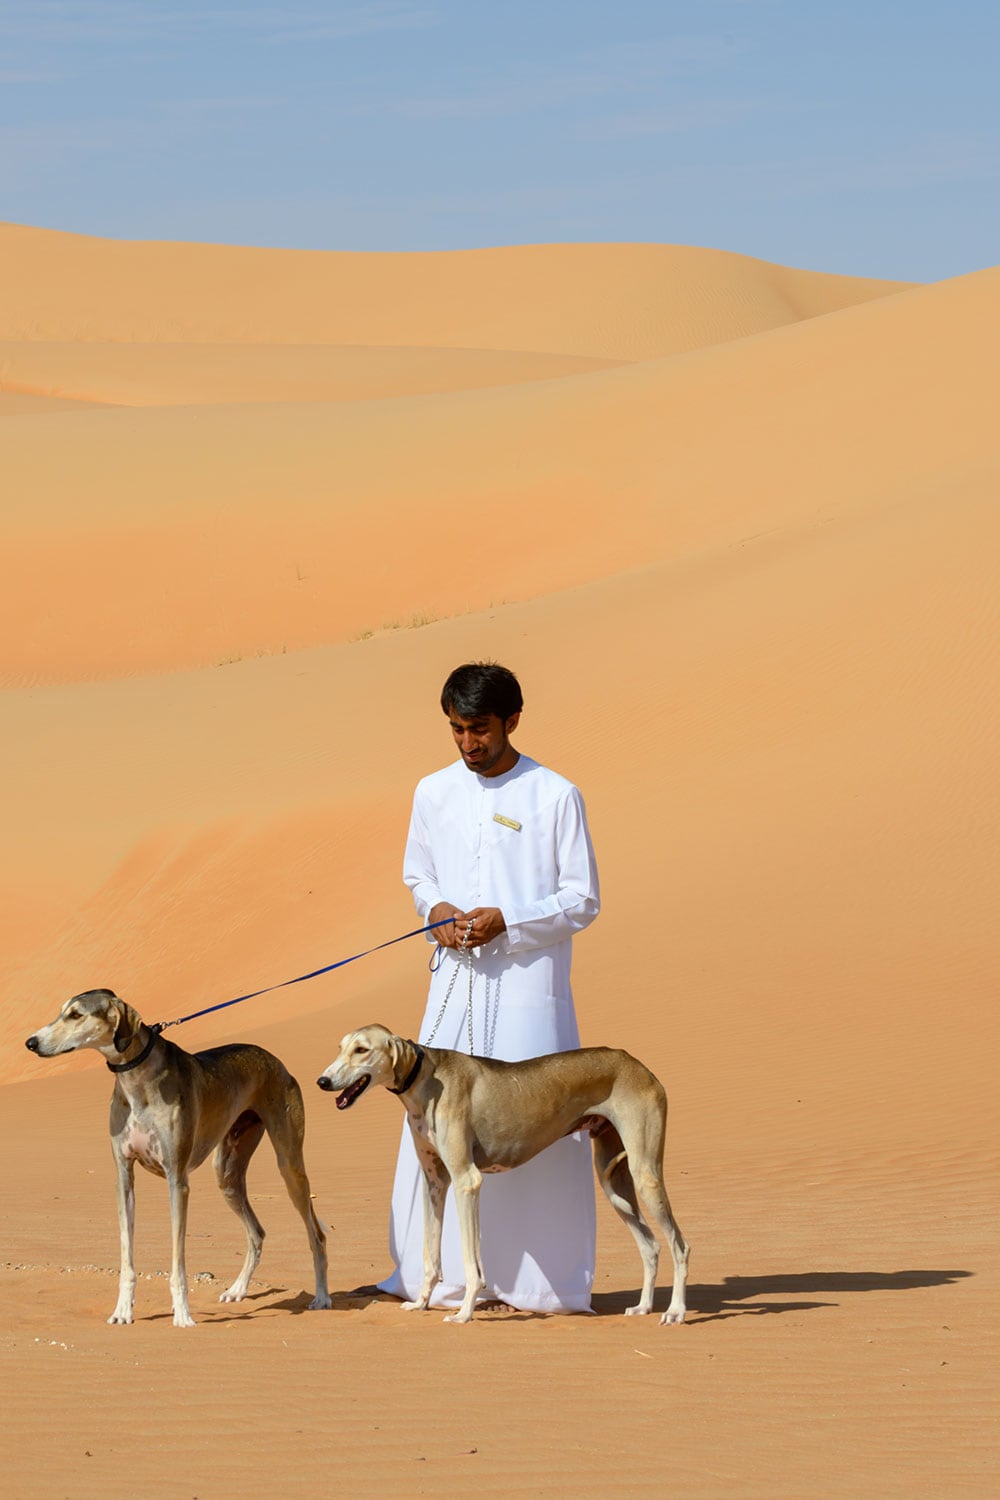 アラブ貴族の楽しみとされる猟犬サルーキの実演も見学できる。